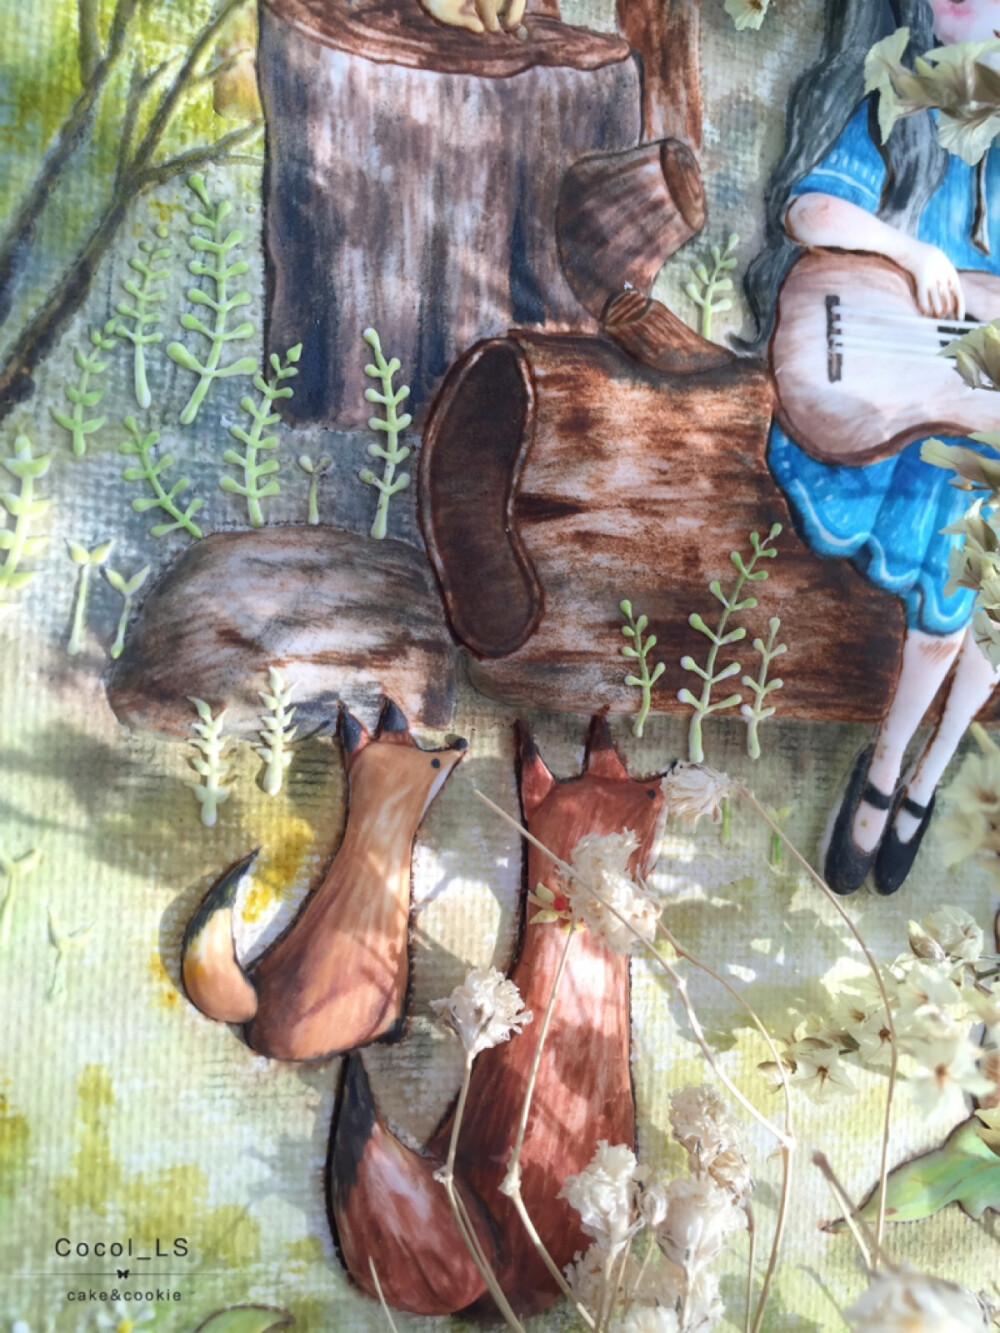 糖霜饼干 一直很喜欢韩国插画家Aeppol的作品 选了这张森林女孩 第一次挑战大背景 用浮雕的手法表现远近高低 可惜照片拍不出来 555～（2016.6）（微博：Cocol_LS）